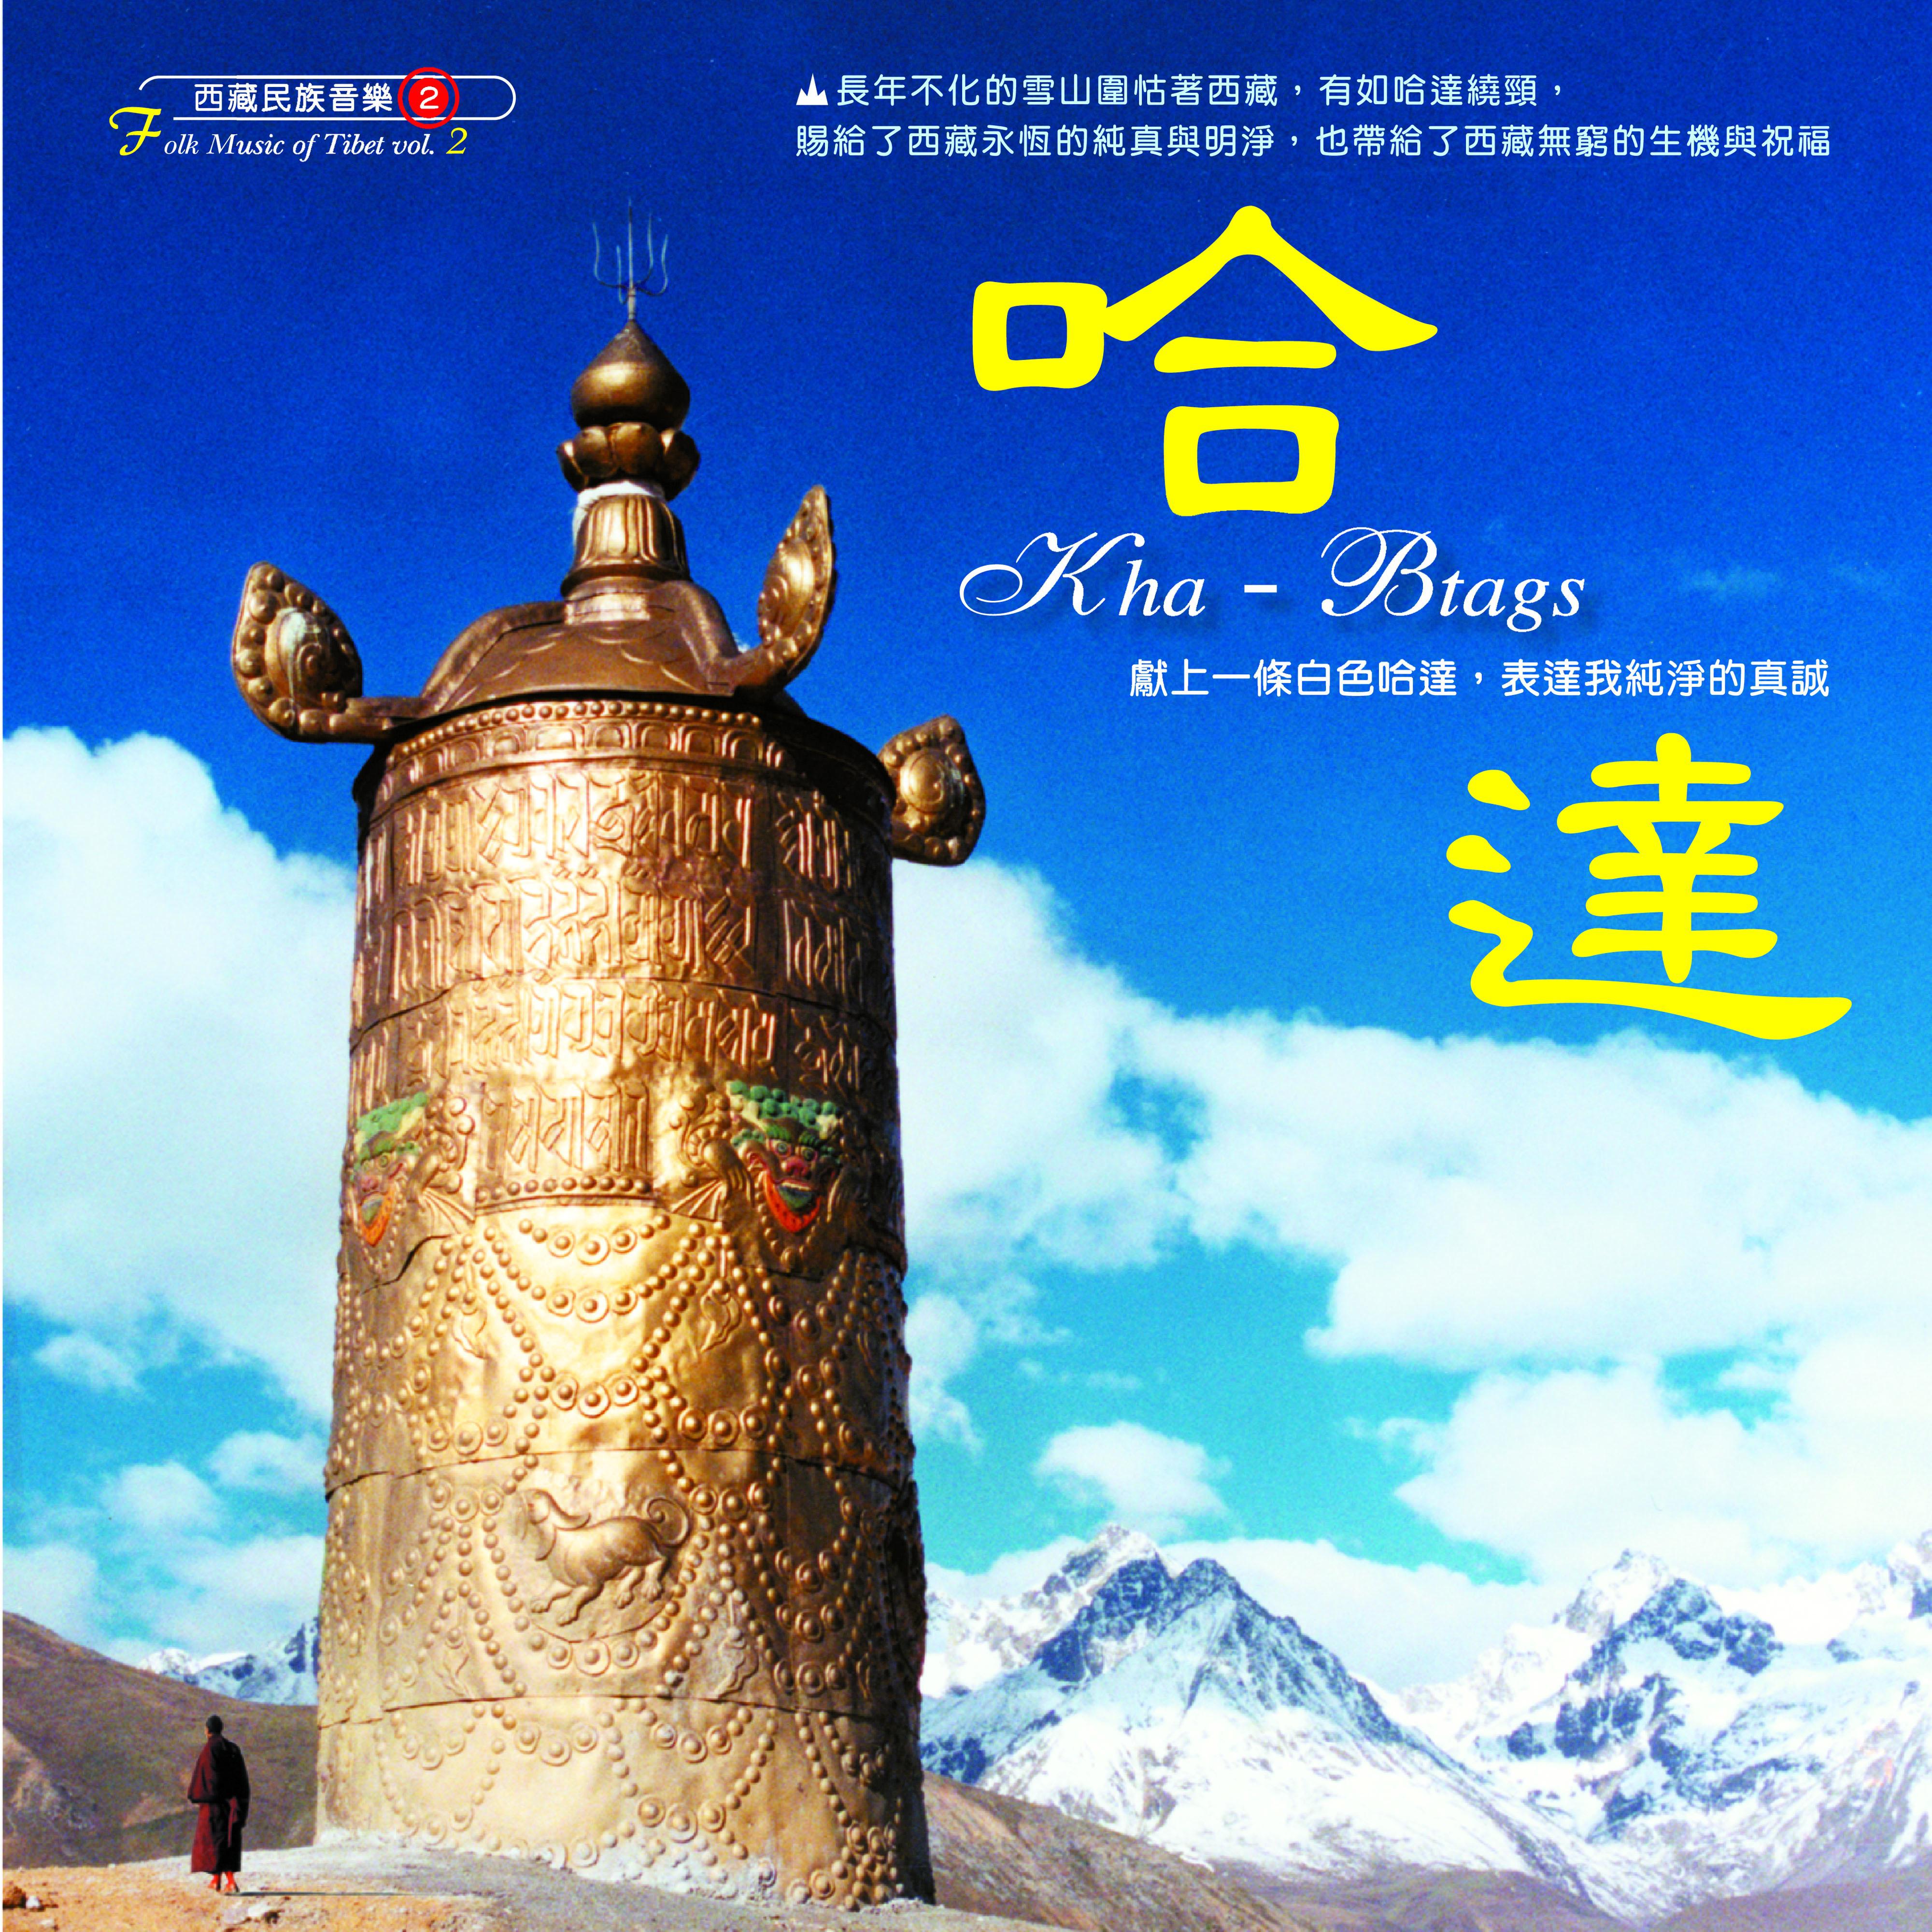 西藏民族音乐 (2) 哈达 衷心祝福